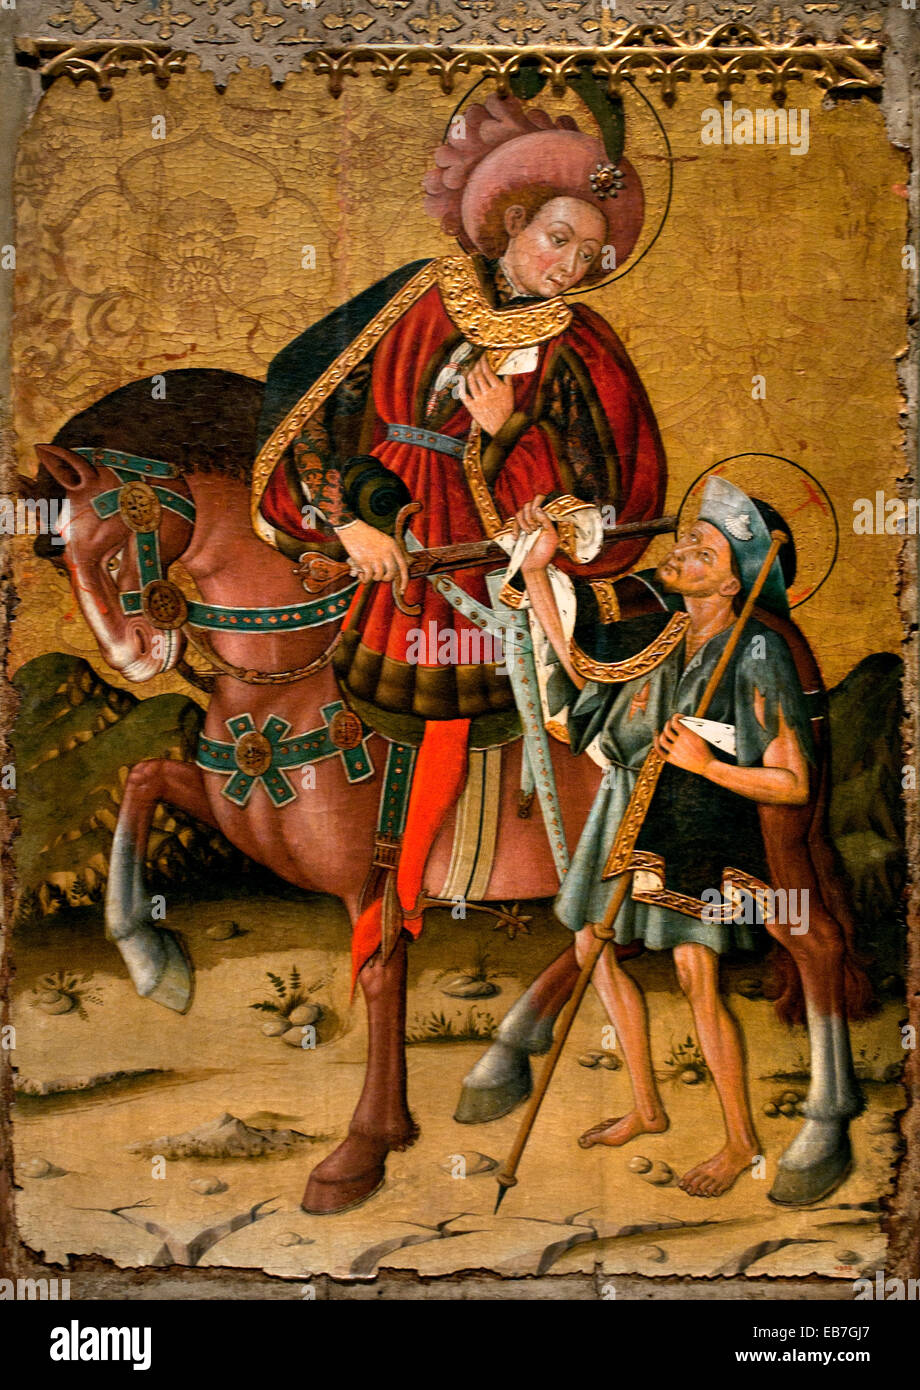 Saint-Martin seinen Mantel von Blasco de Grañén dokumentierte in Zaragoza,  1422-1459 Spanien Spanisch mittelalterlichen gotischen Kunst teilen  Stockfotografie - Alamy